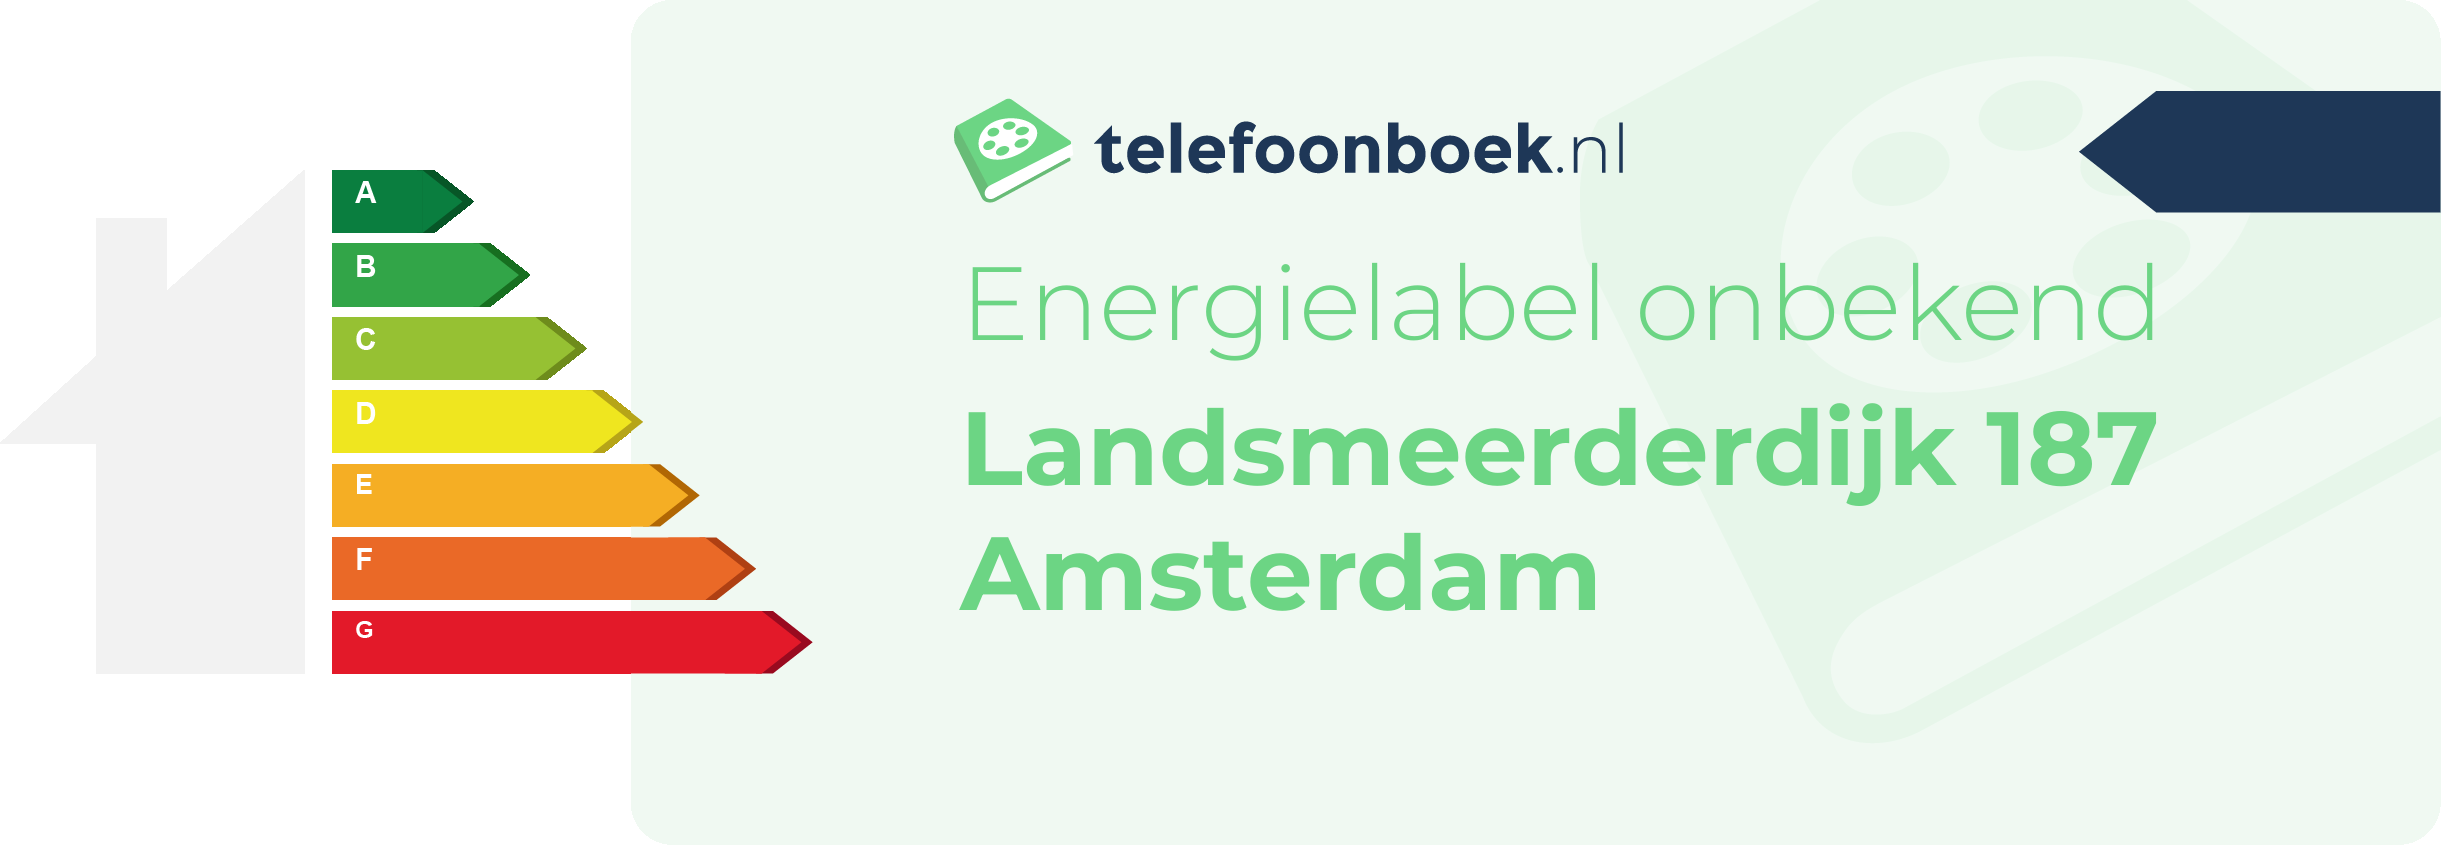 Energielabel Landsmeerderdijk 187 Amsterdam